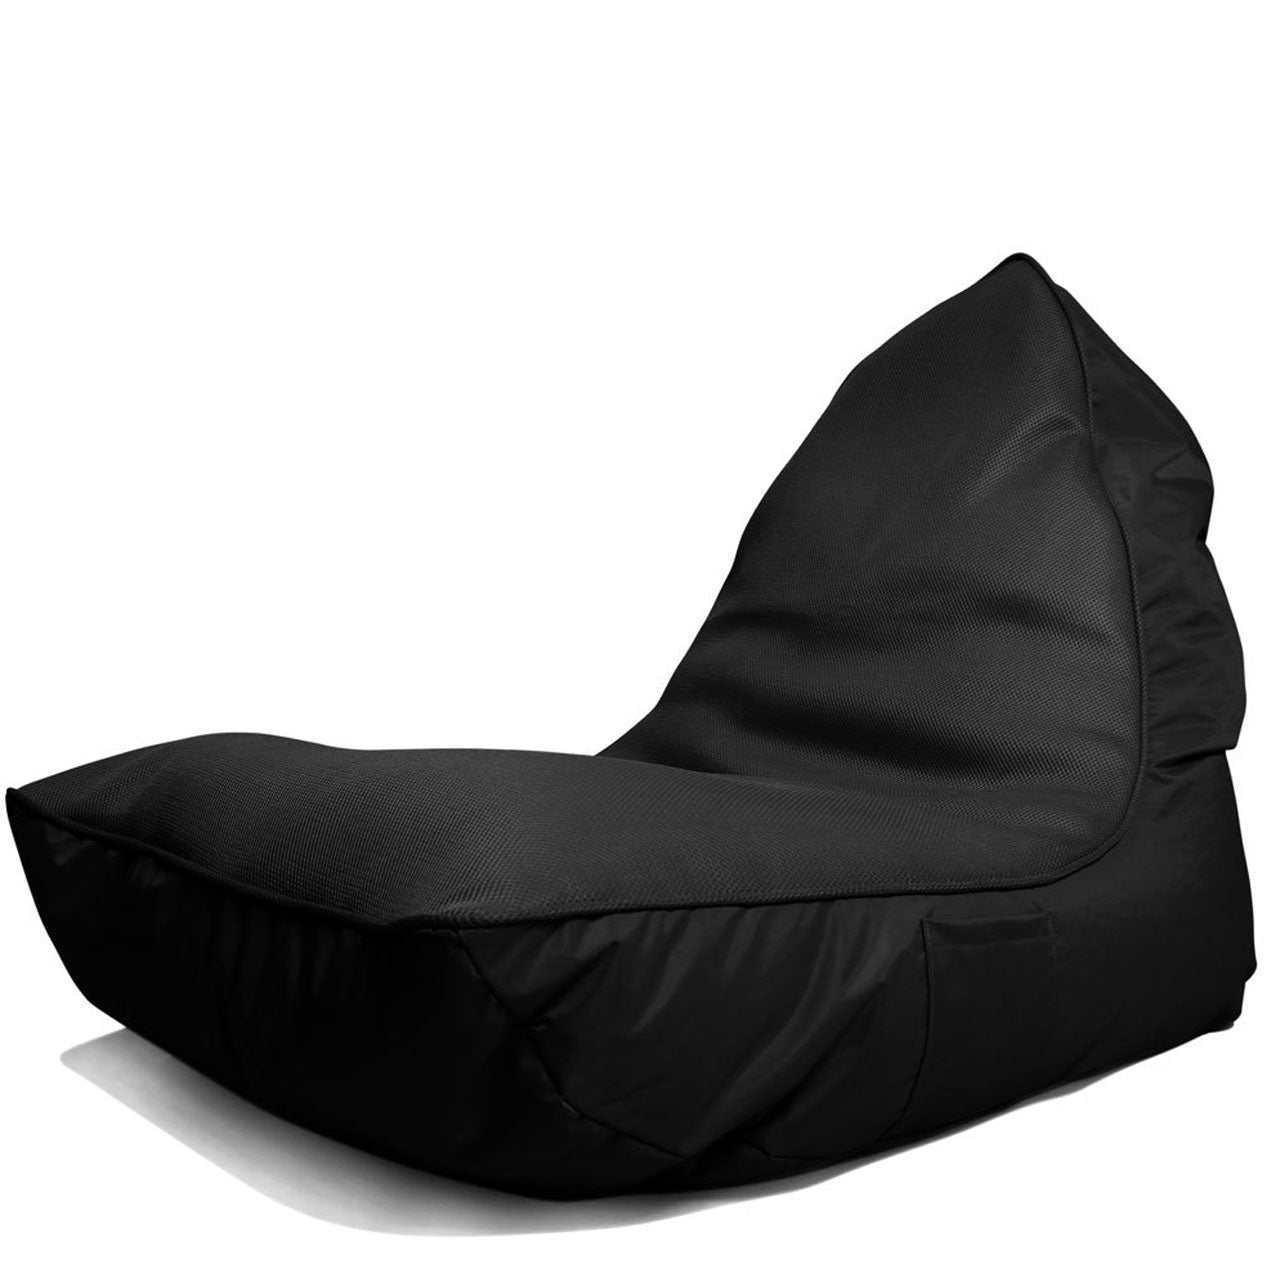 VIP Bean Bag Sofa (Gangsta Black)